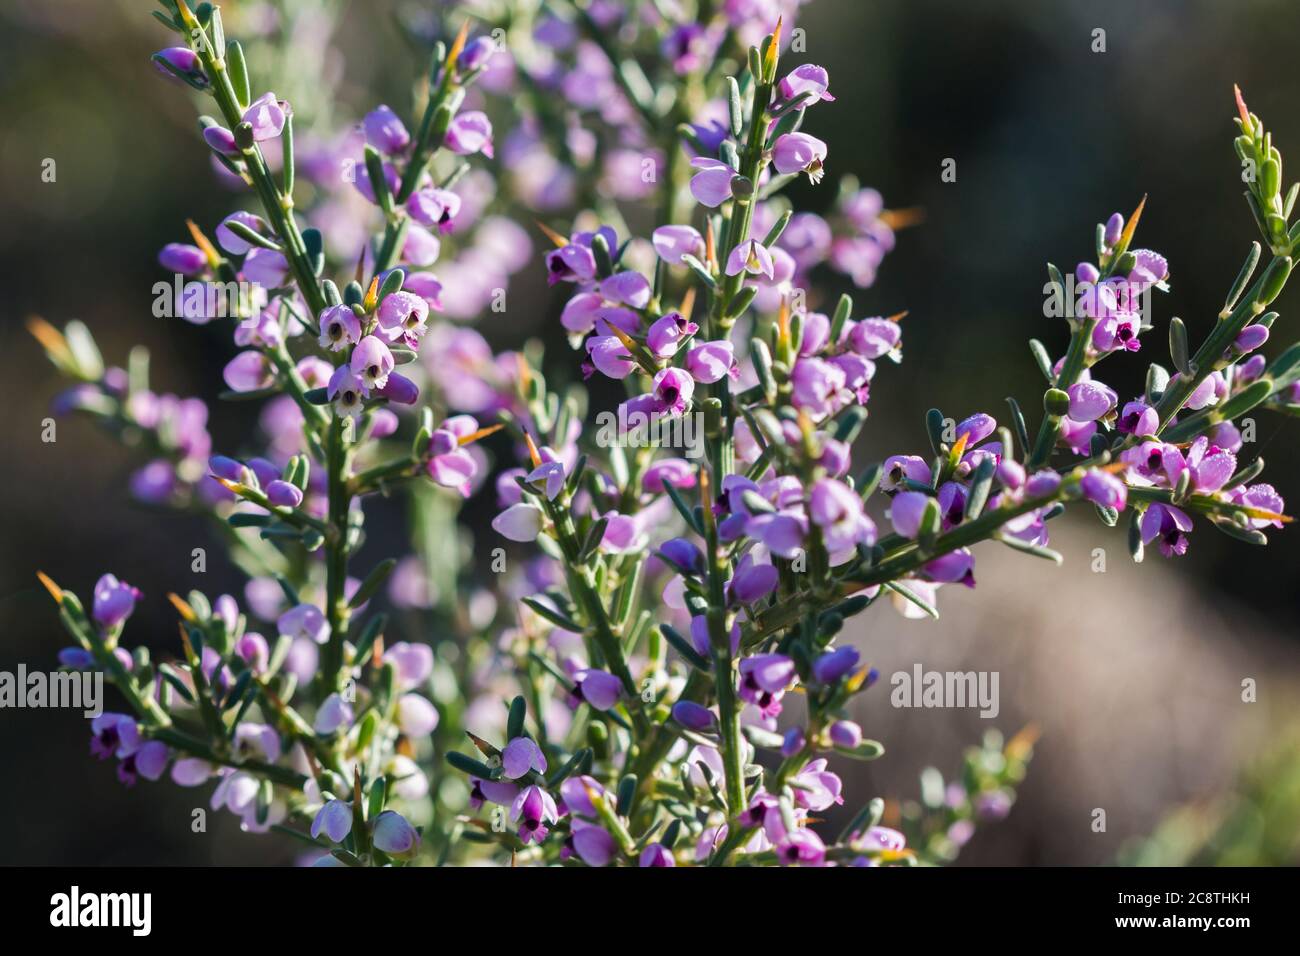 Dettagli dei fiori piccoli e sinuosi della pianta di Nylandtia Spinoza Fynbos Foto Stock